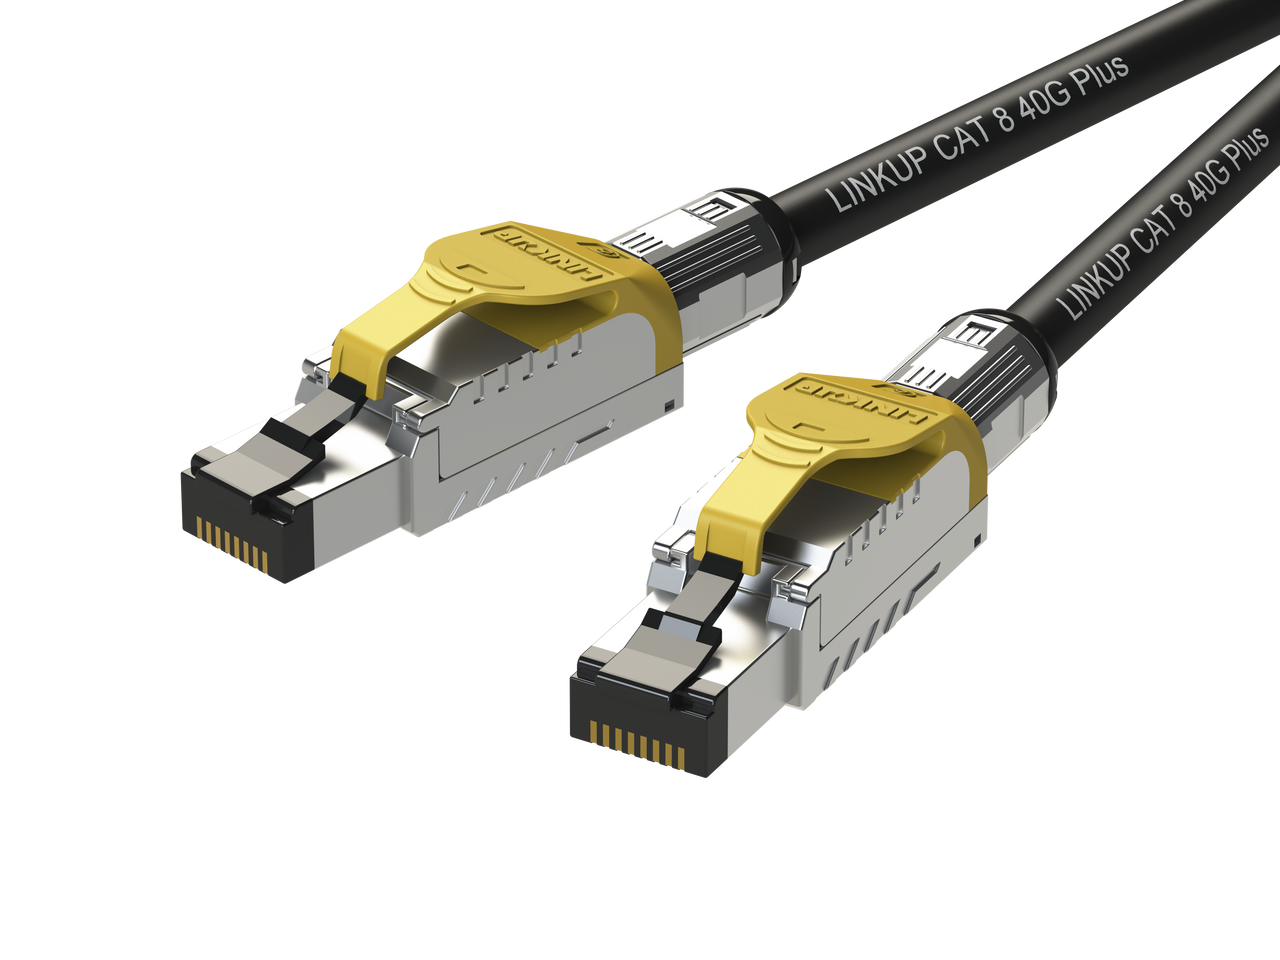 Câble Ethernet Cat 8, cordon de raccordement RJ45 haute vitesse robuste  26AWG, réseau LAN Cat8 plaqué or 40Gbps 15000Mhz